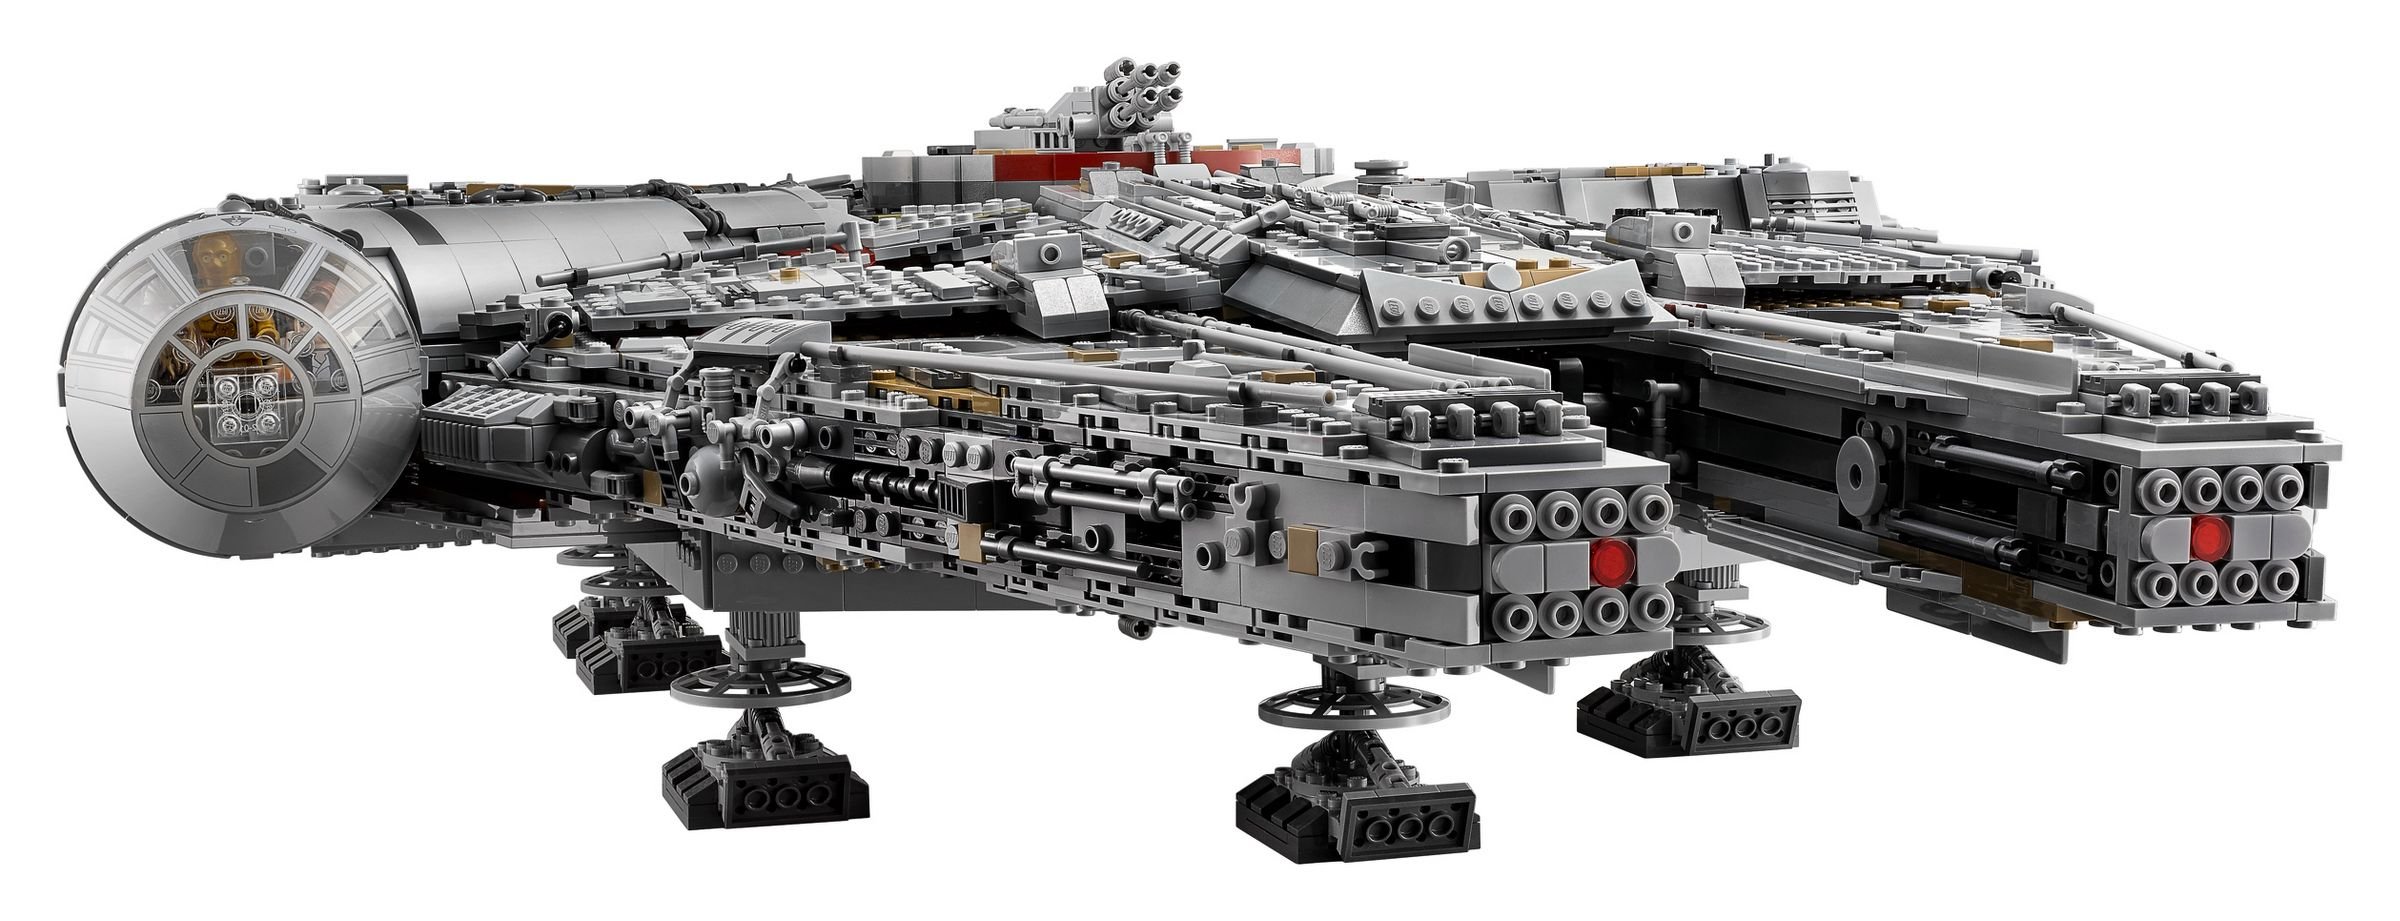 LEGO Star Wars 75192 Millennium Falcon™ LEGO_75192_alt6.jpg